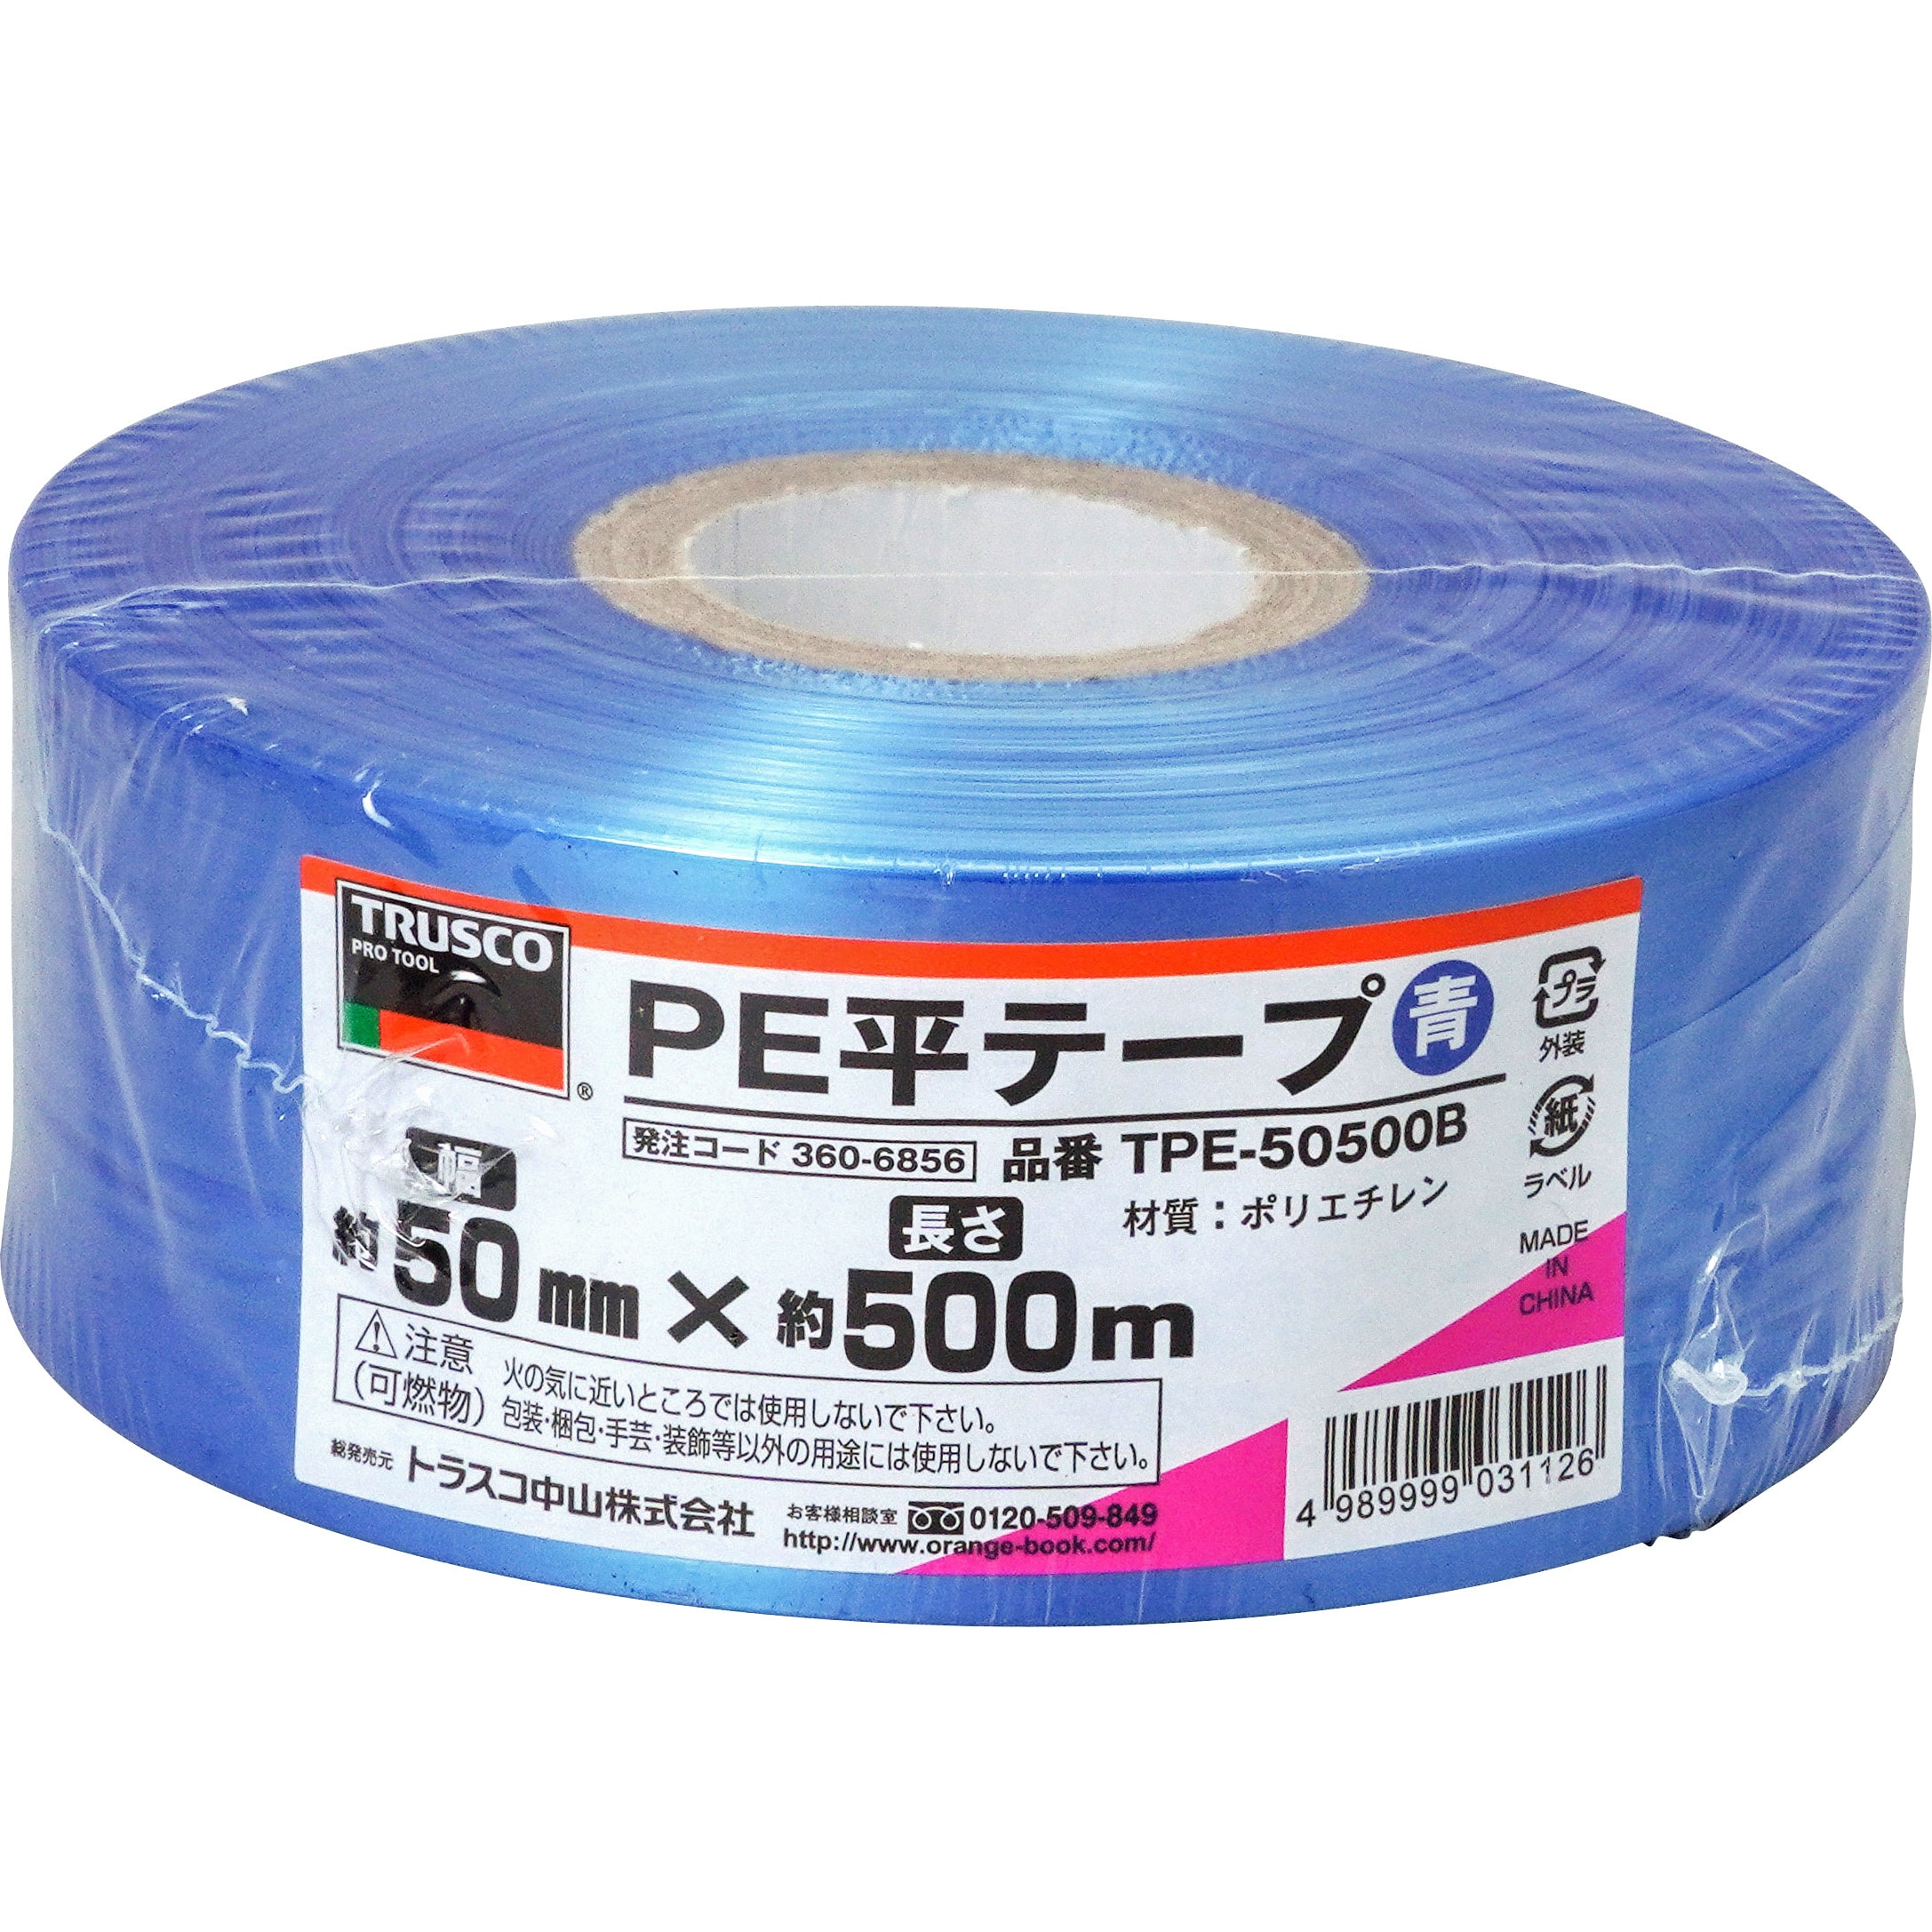 ローヤルシルバーテープ平巻ピンク50mm約500m30巻 - 2